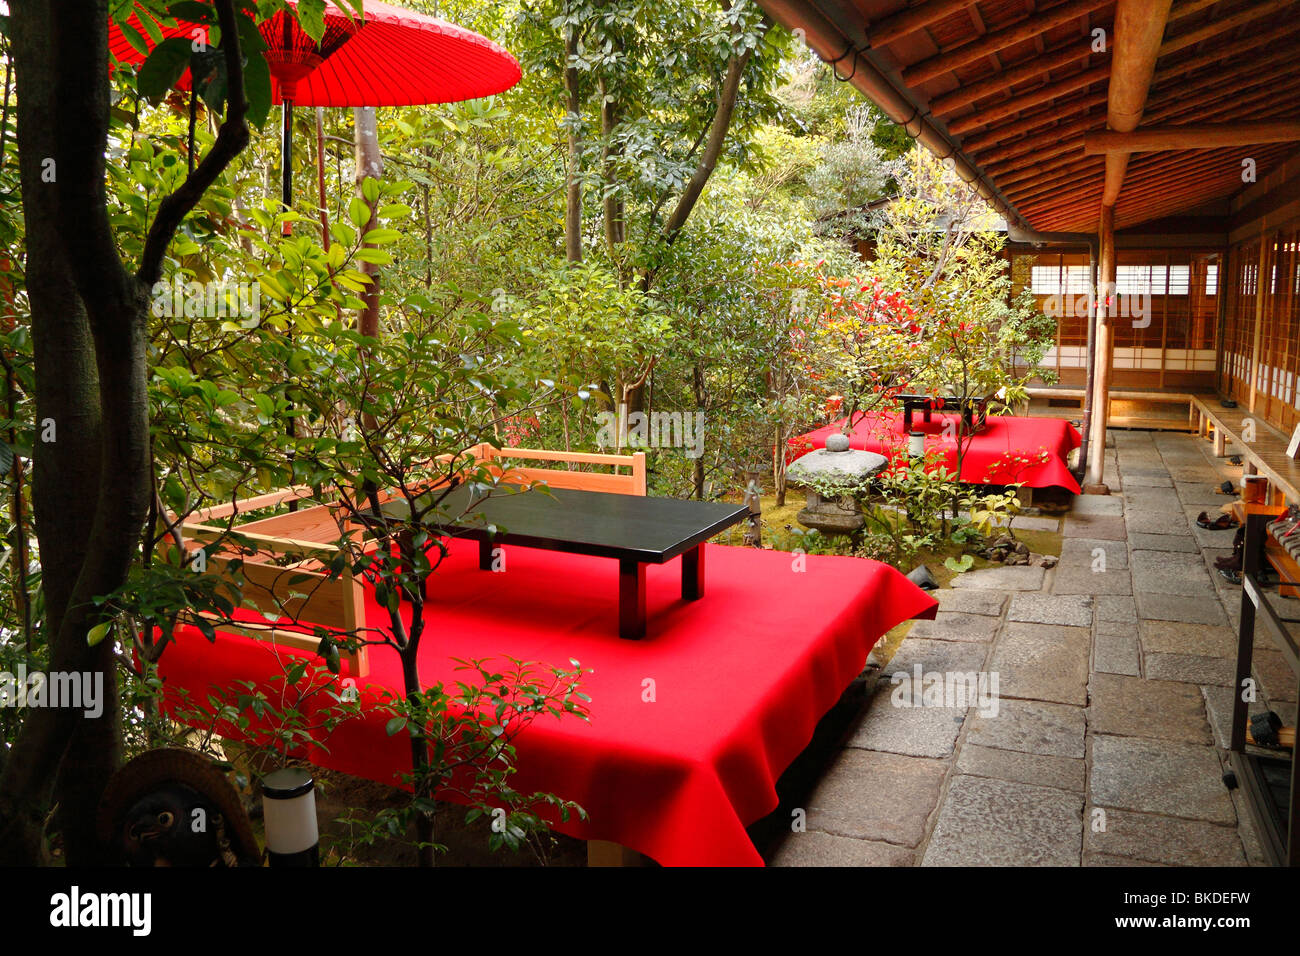 Traditionelle japanische Teehaus in Alleinlage des Kyoto-Protokolls mit rotem Tuch Tischen und Sitzbereich, umgeben von Bäumen Stockfoto